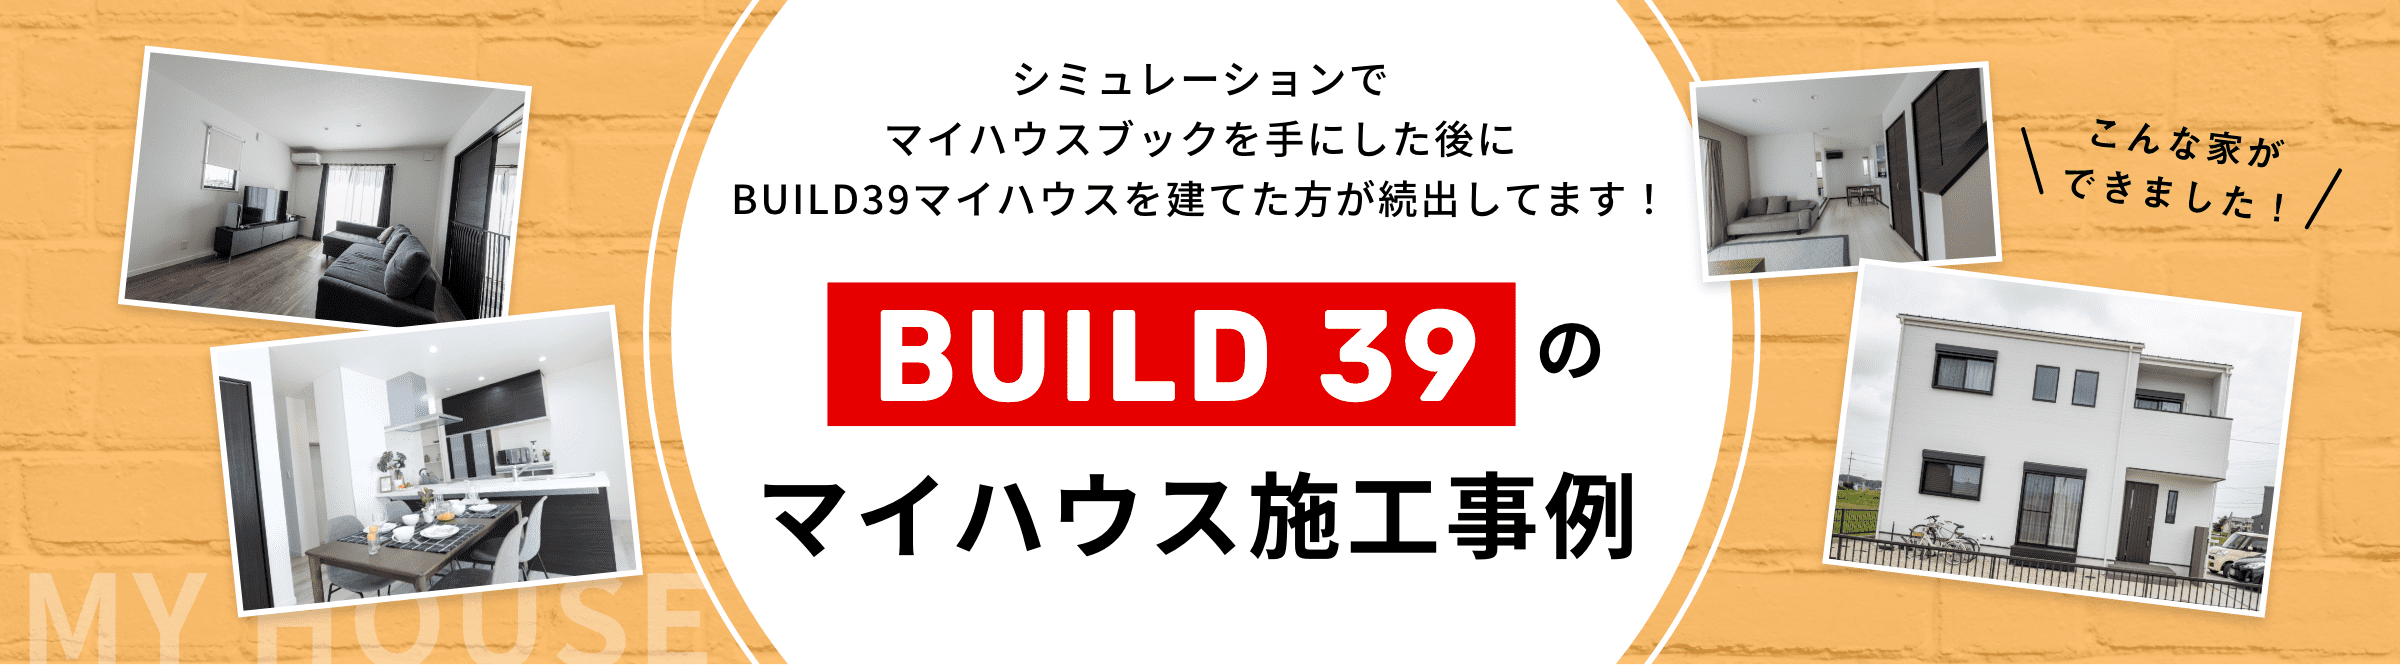 シミュレーションでマイハウスブックを手にした後にBUILD39マイハウスを建てた方が続出してます！ BUILD39のマイハウス施工事例